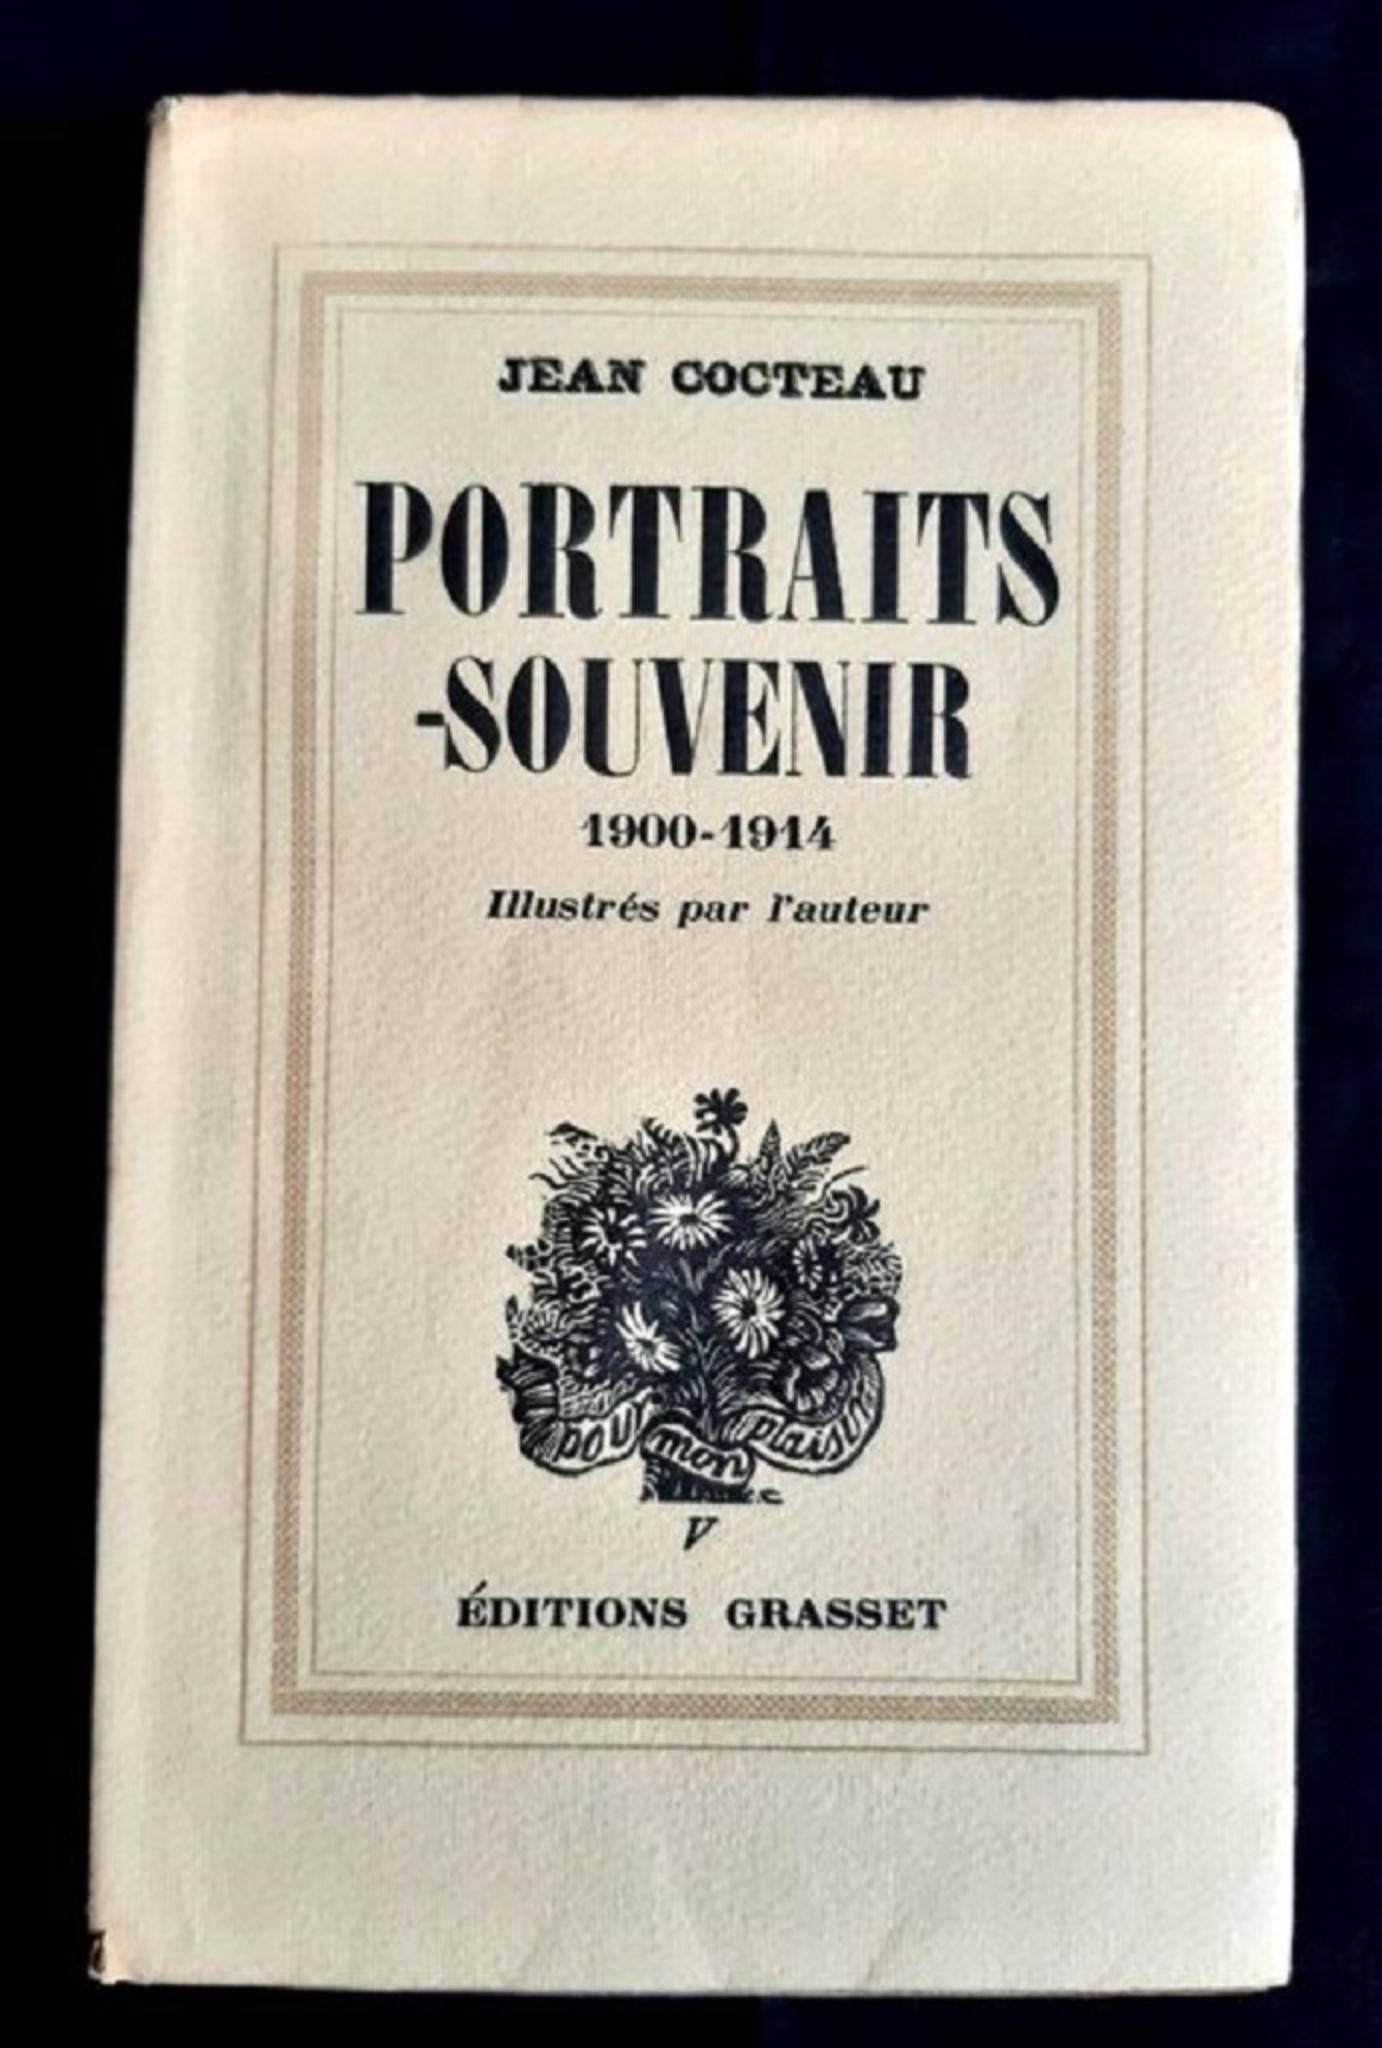 Portraits-souvenirs - Vintage Rare Book Illustrated by Jean Cocteau - 1935 1